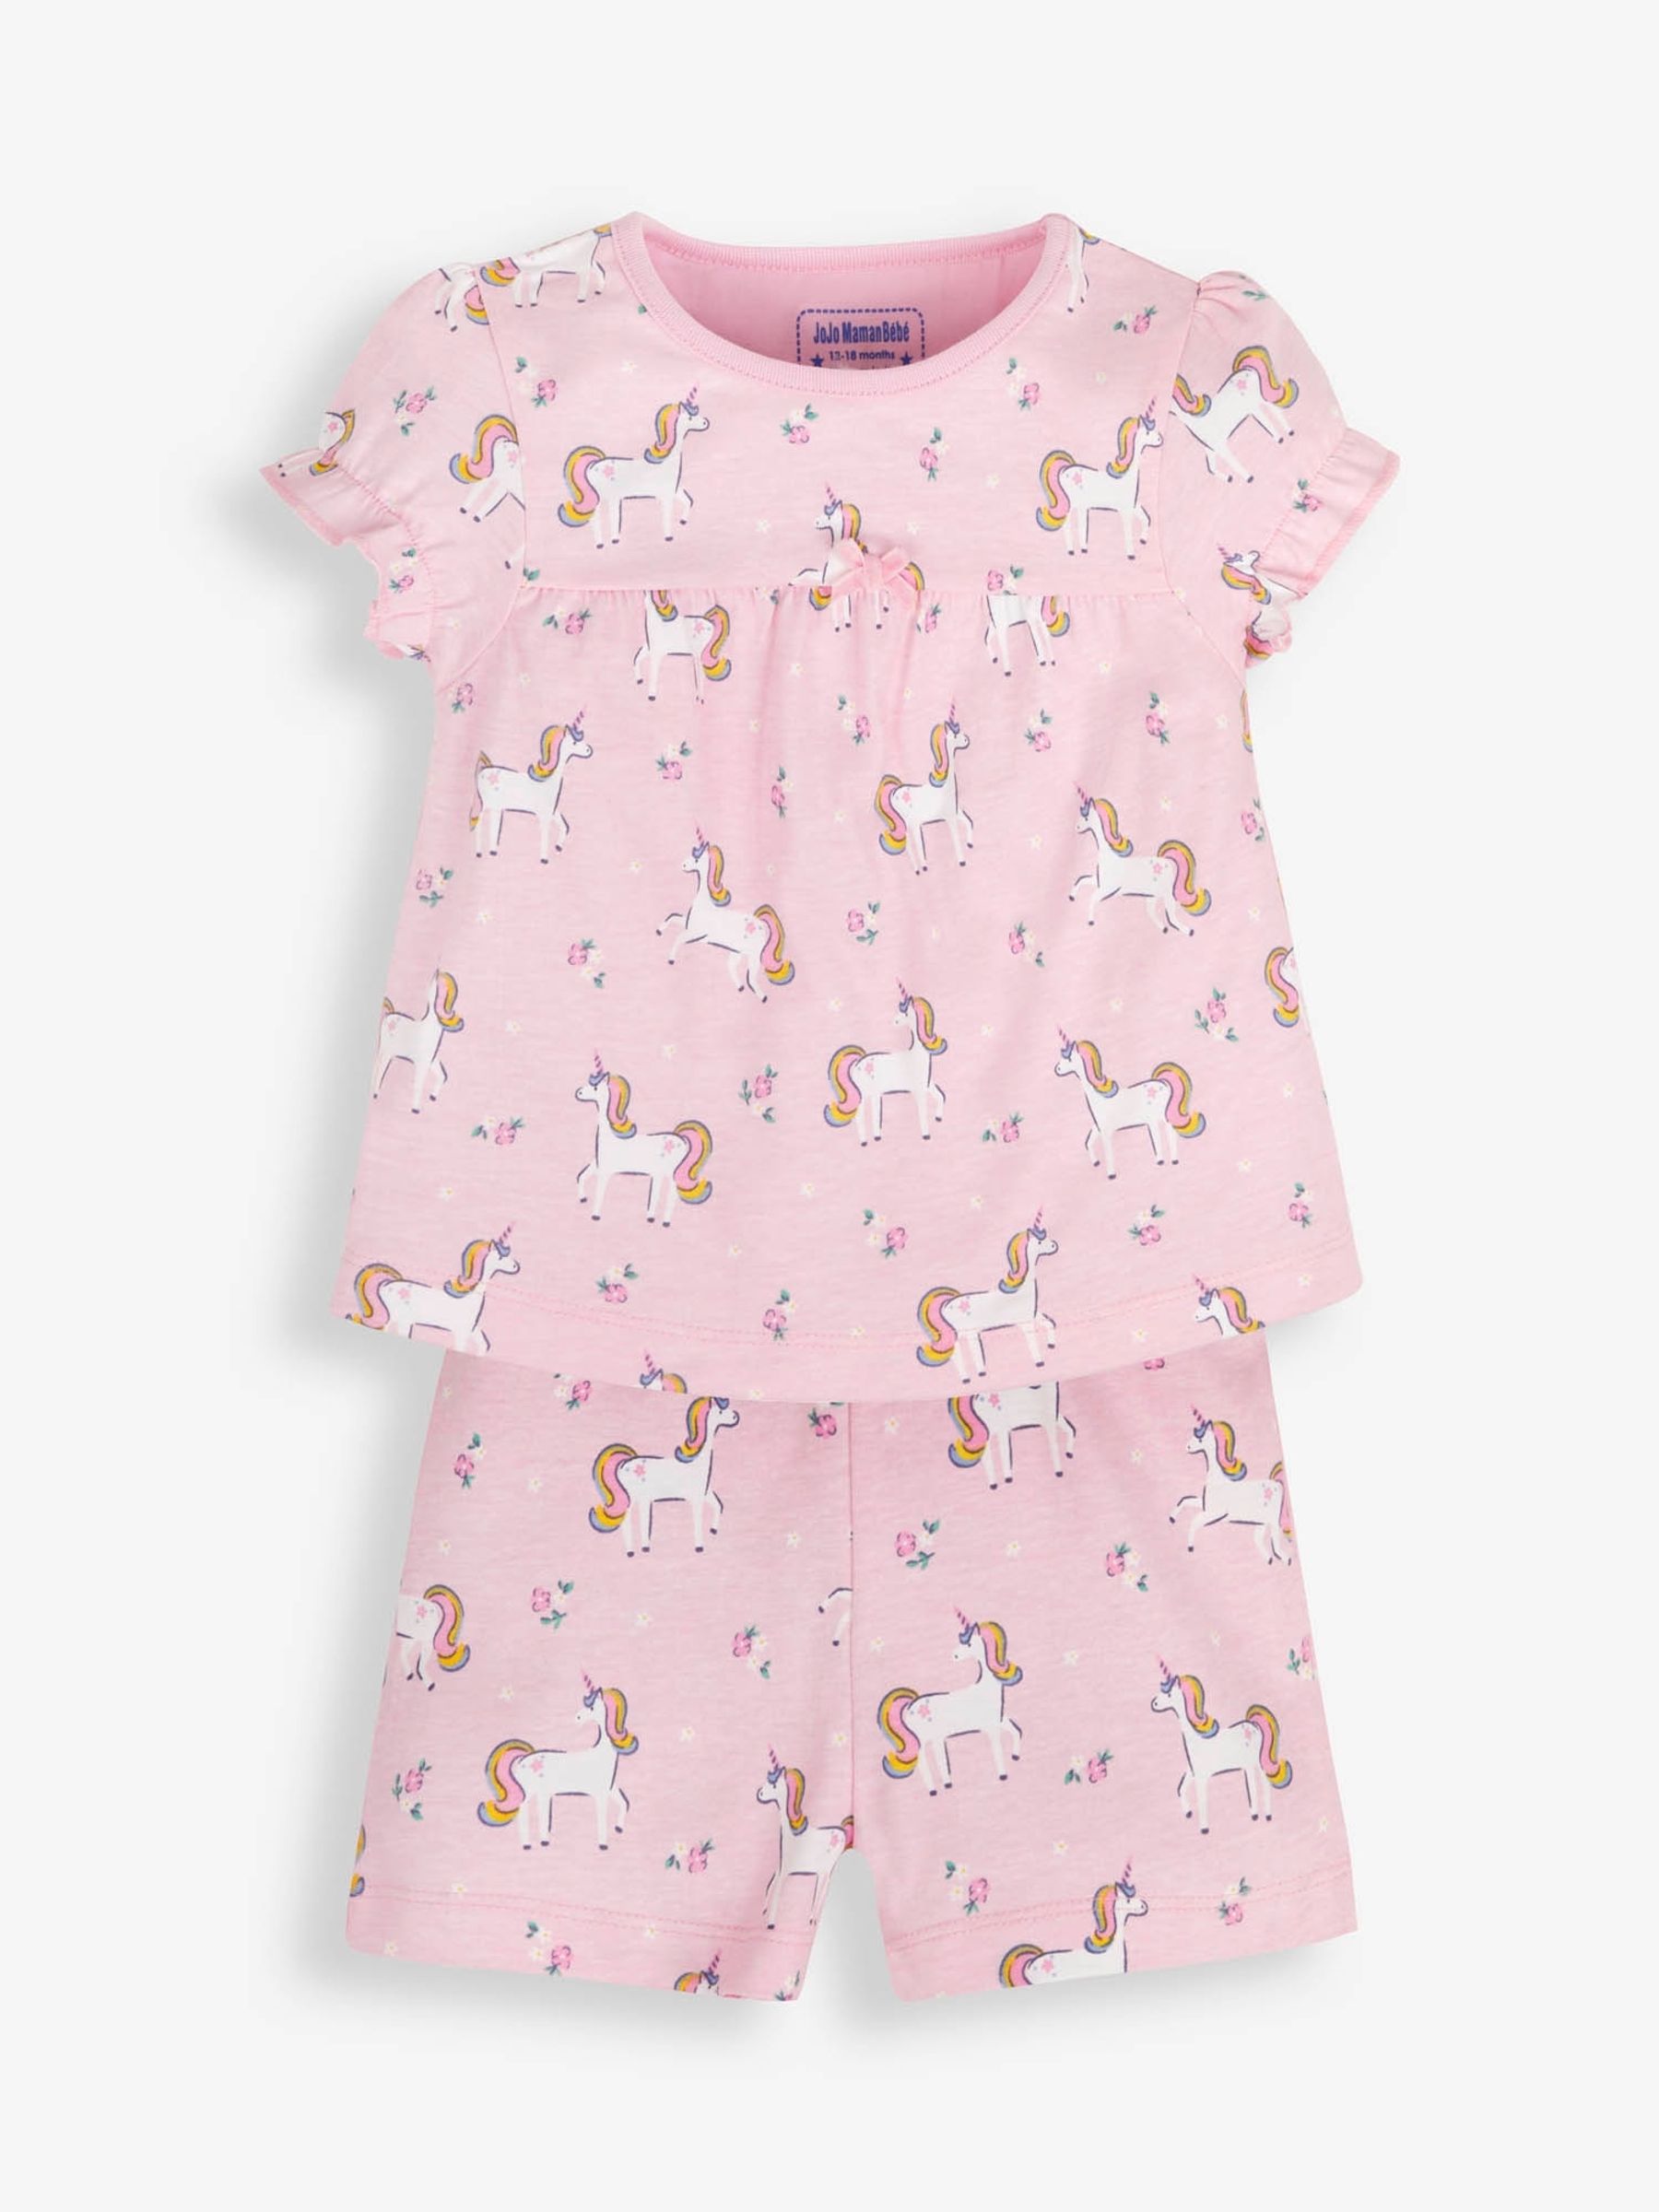 Buy JoJo Maman Bébé Girls' 2-Pack Unicorn Jersey Pyjamas from the JoJo ...